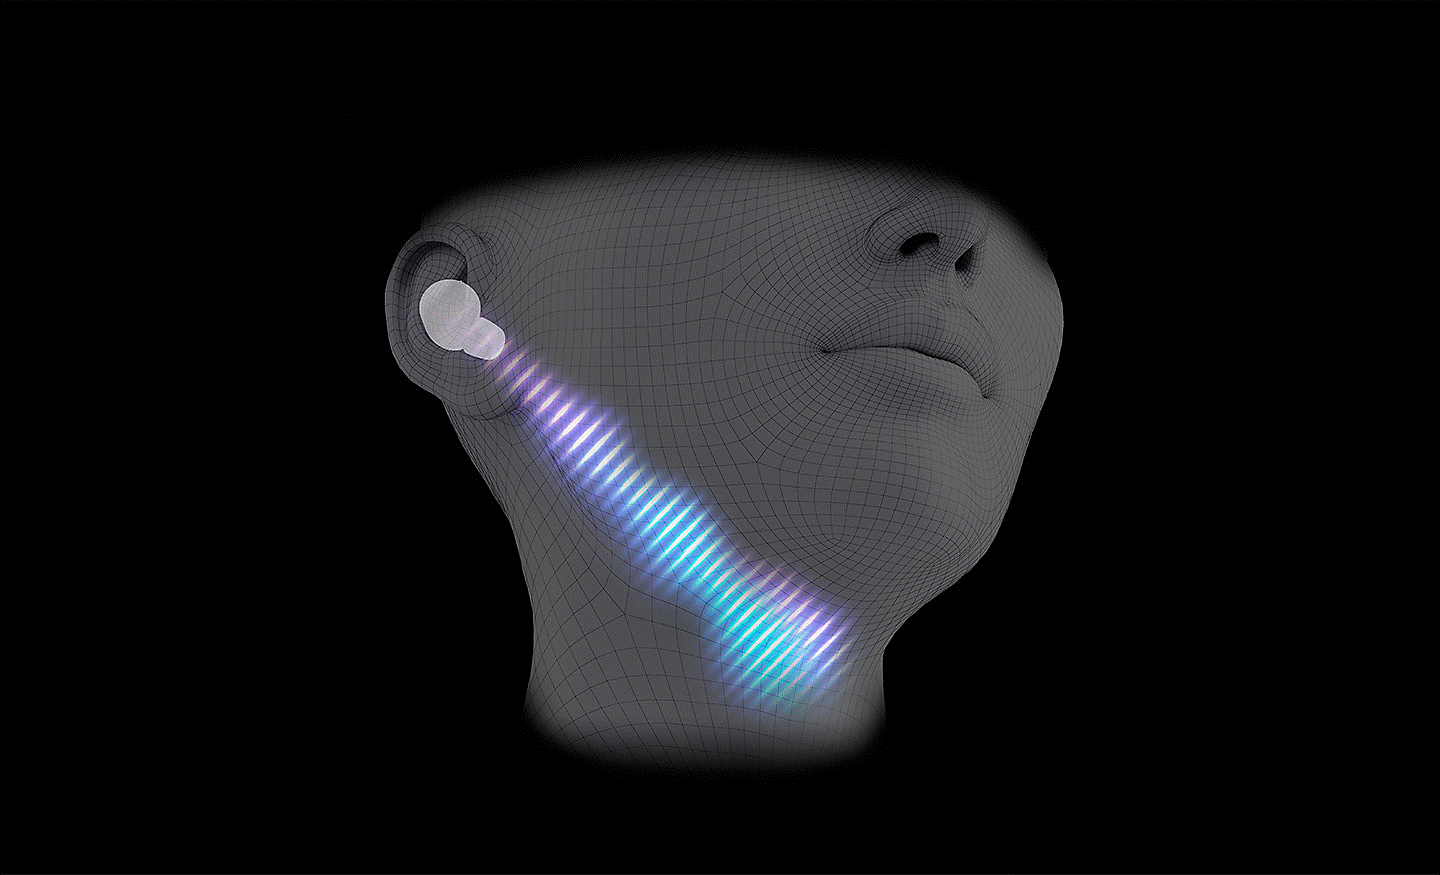 Počítačom vytvorený obrázok hlavy s nasadenými slúchadlami a diagonálnou čiarou zvukovej vlny, ktorá mieri od ucha ku krku